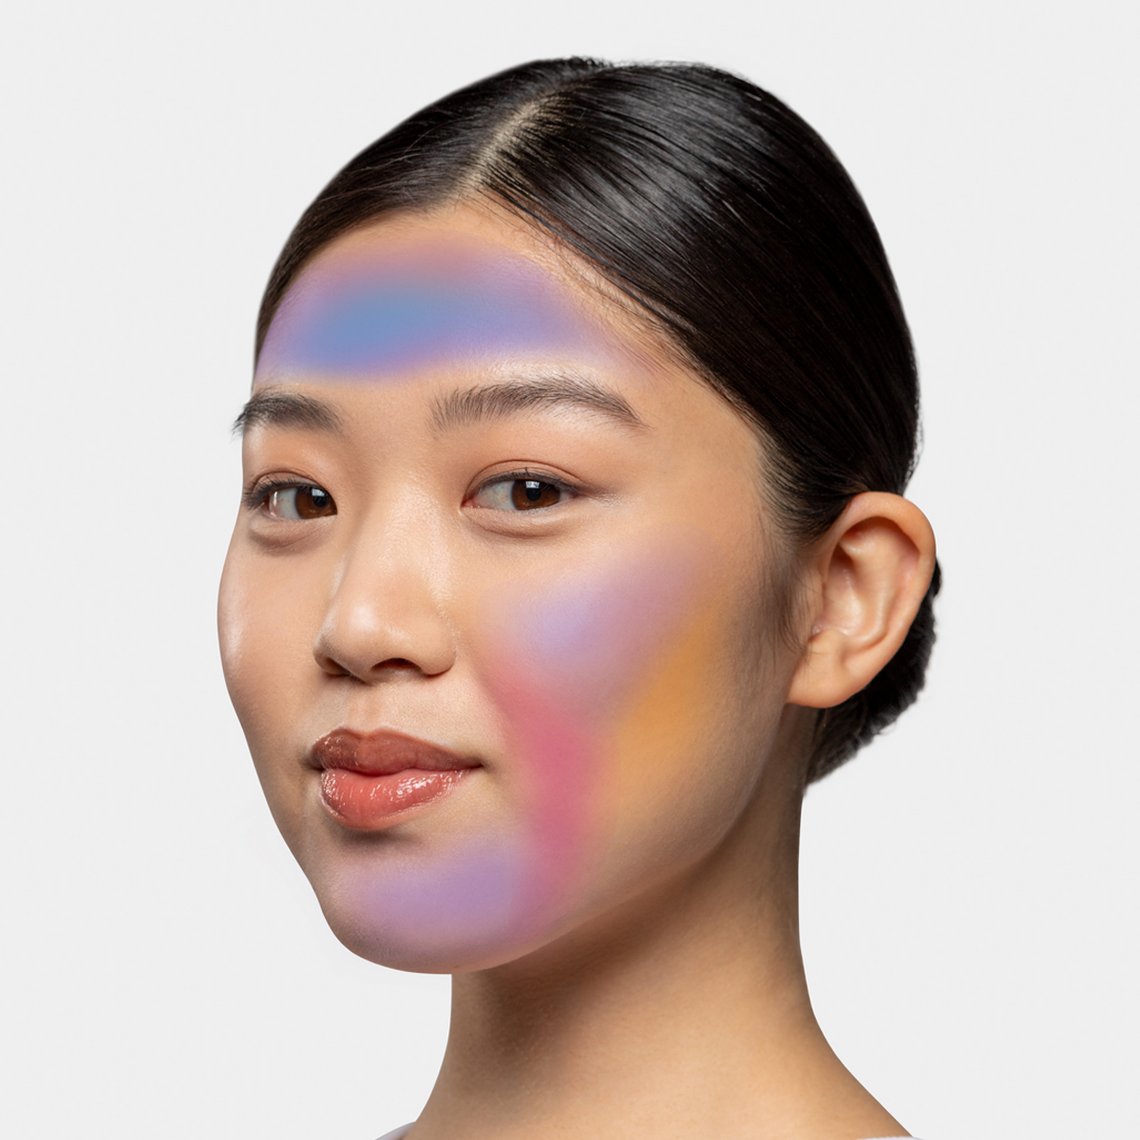 Frau mit unterschiedlichen Farben im Gesicht, die verschiedene Hautprobleme darstellen